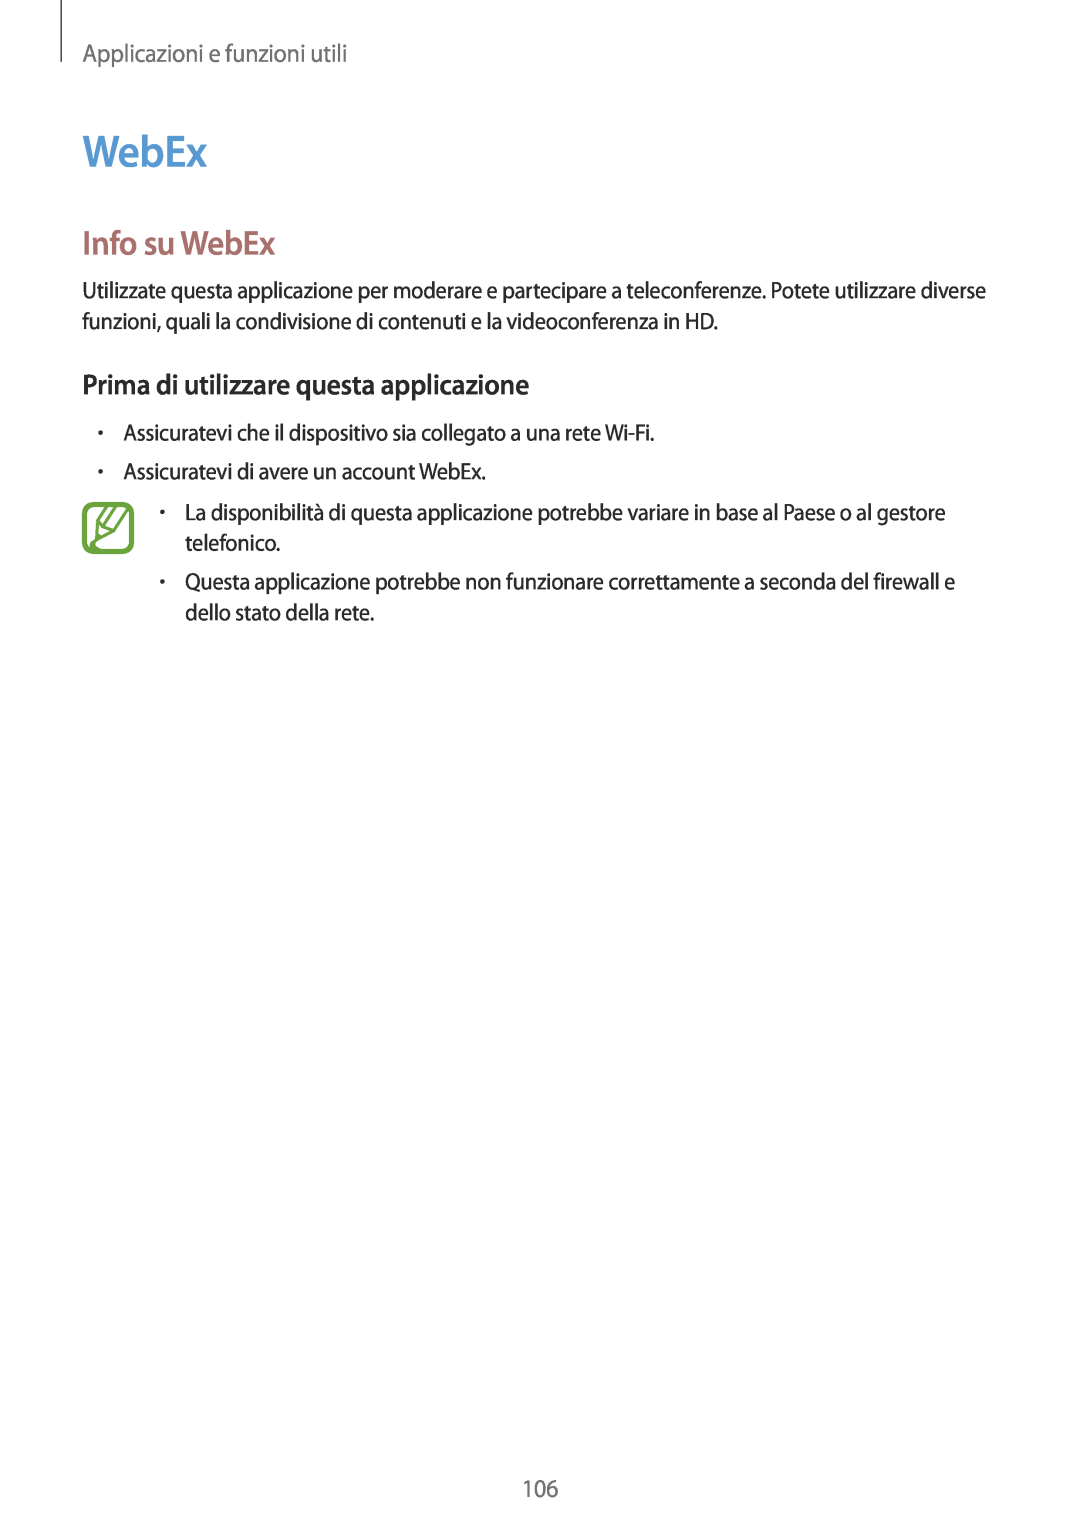 Samsung SM-T700NTSATUR manual Info su WebEx, Prima di utilizzare questa applicazione, Applicazioni e funzioni utili 